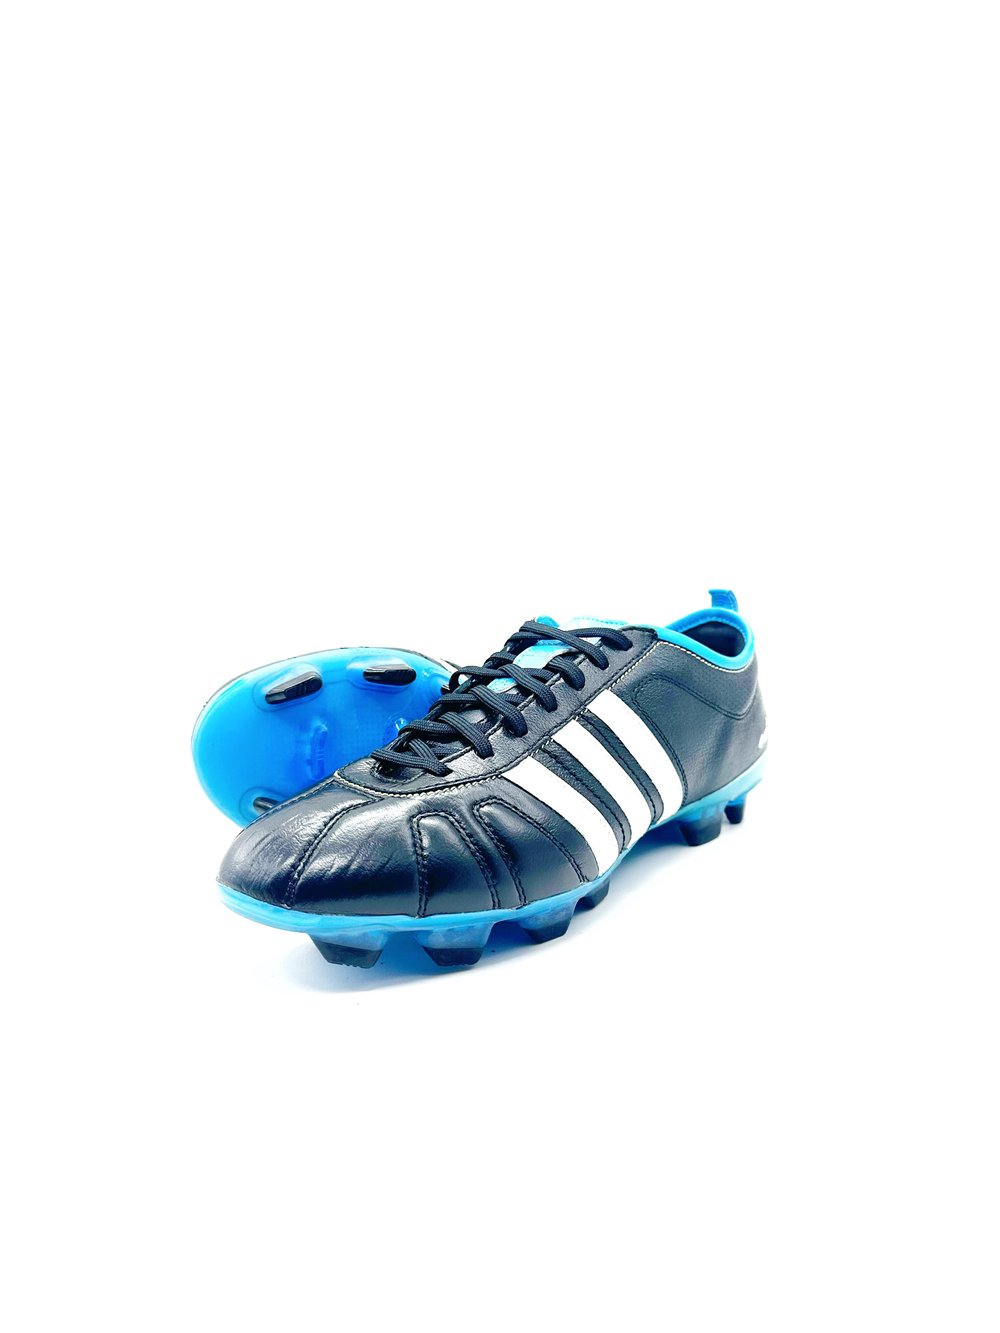 Image of Adidas adipure IV FG BLACK blue 